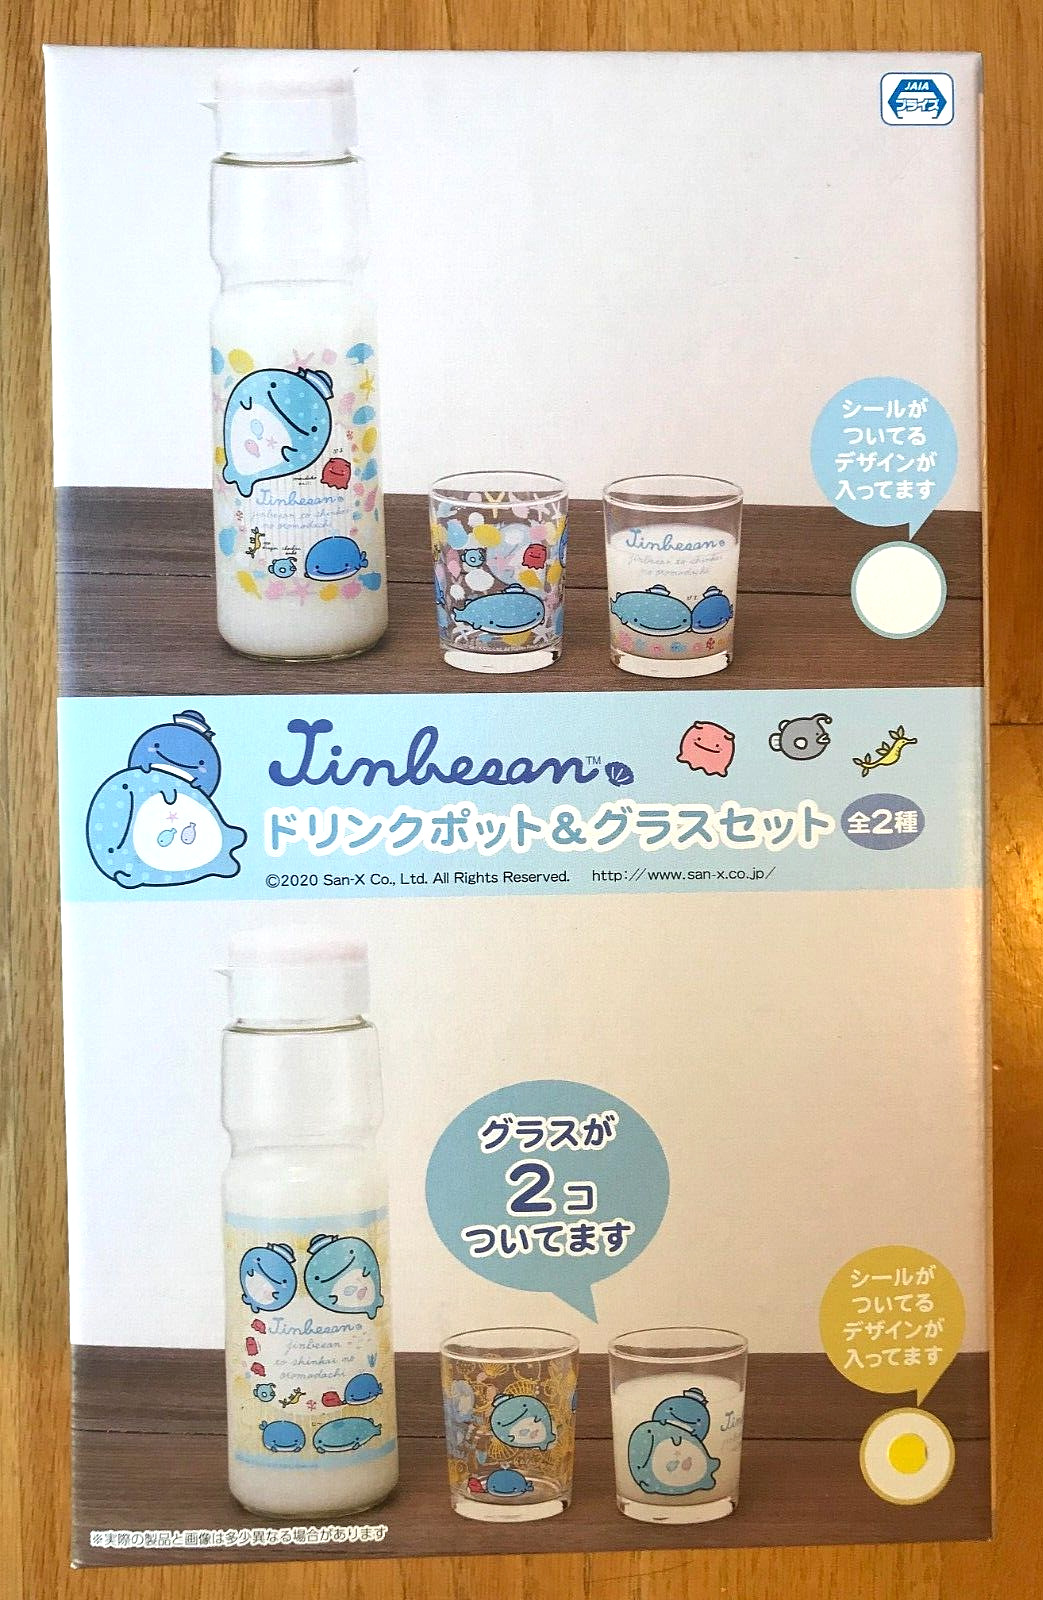 NIB Jinbee Jinbei Jinbe san Whale Shark Glass Bottle Pair 3 Pc Set Toreba San-X